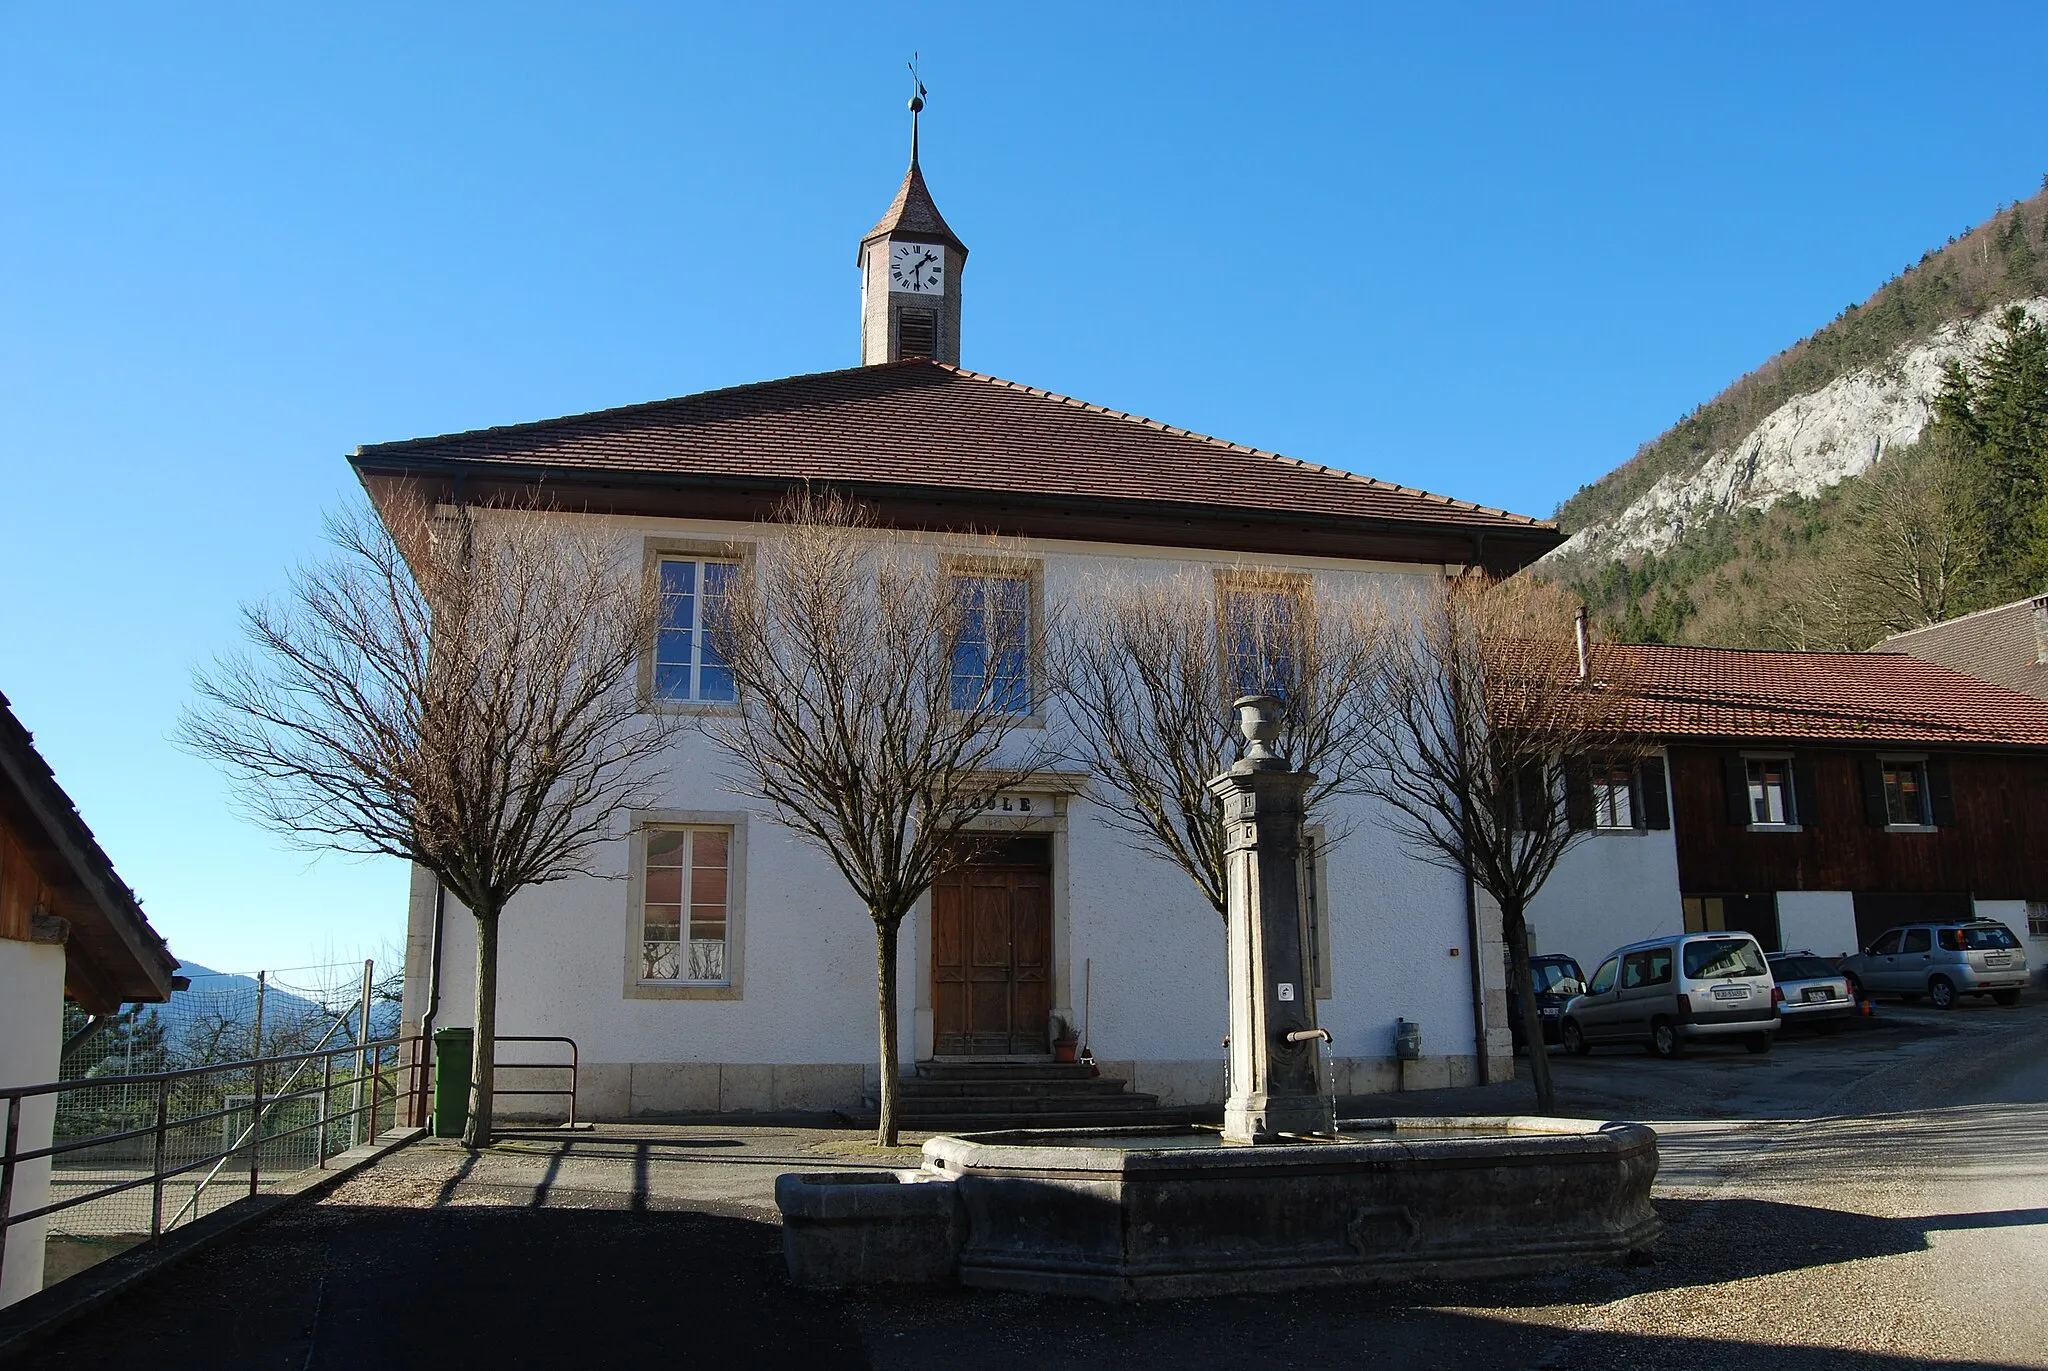 Photo showing: School building of Belprahon, canton of Bern, Switzerland